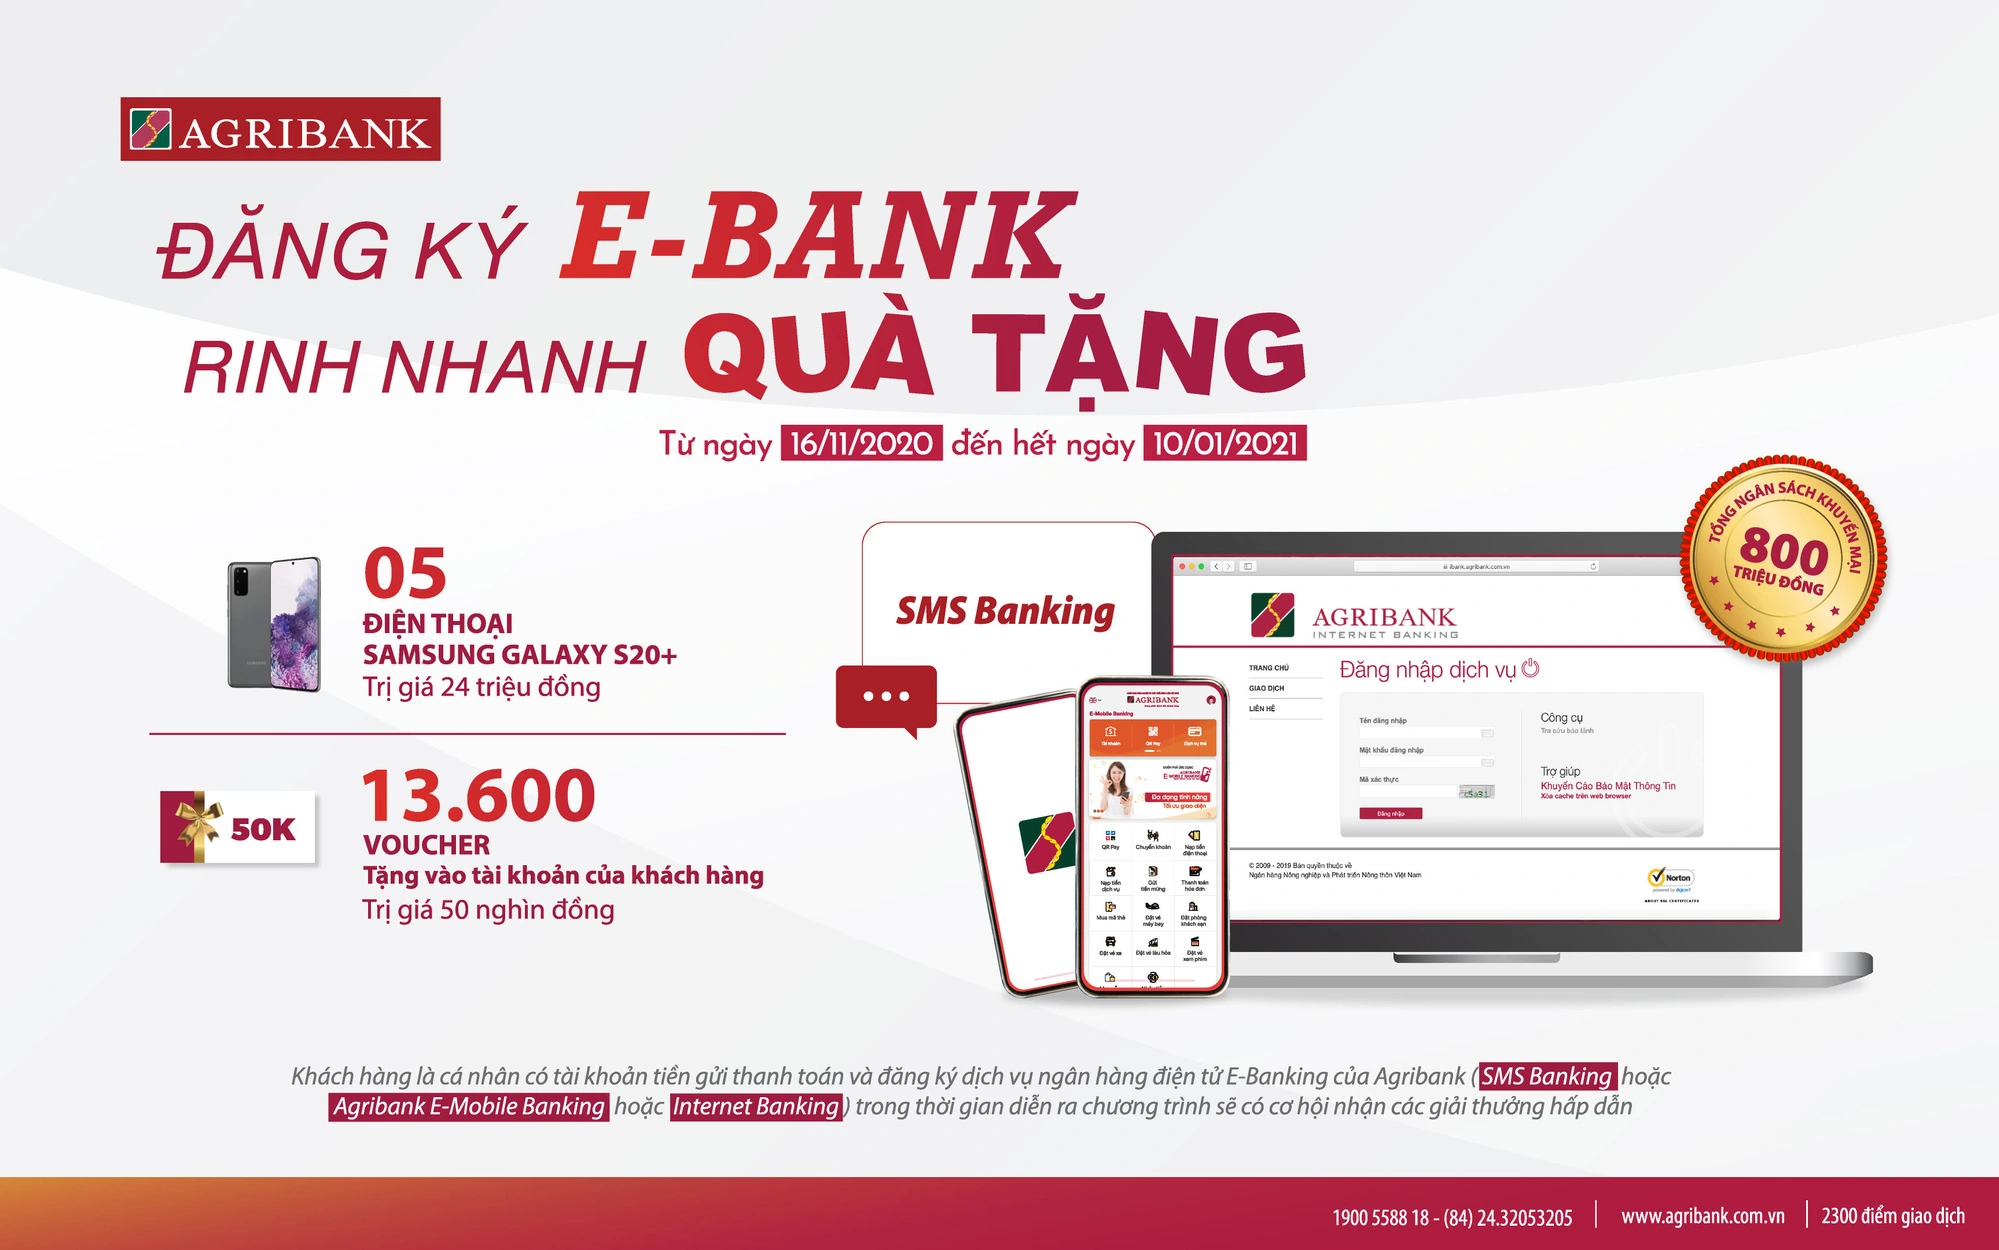 Cùng Agribank Đăng ký E-Bank – rinh nhanh quà tặng